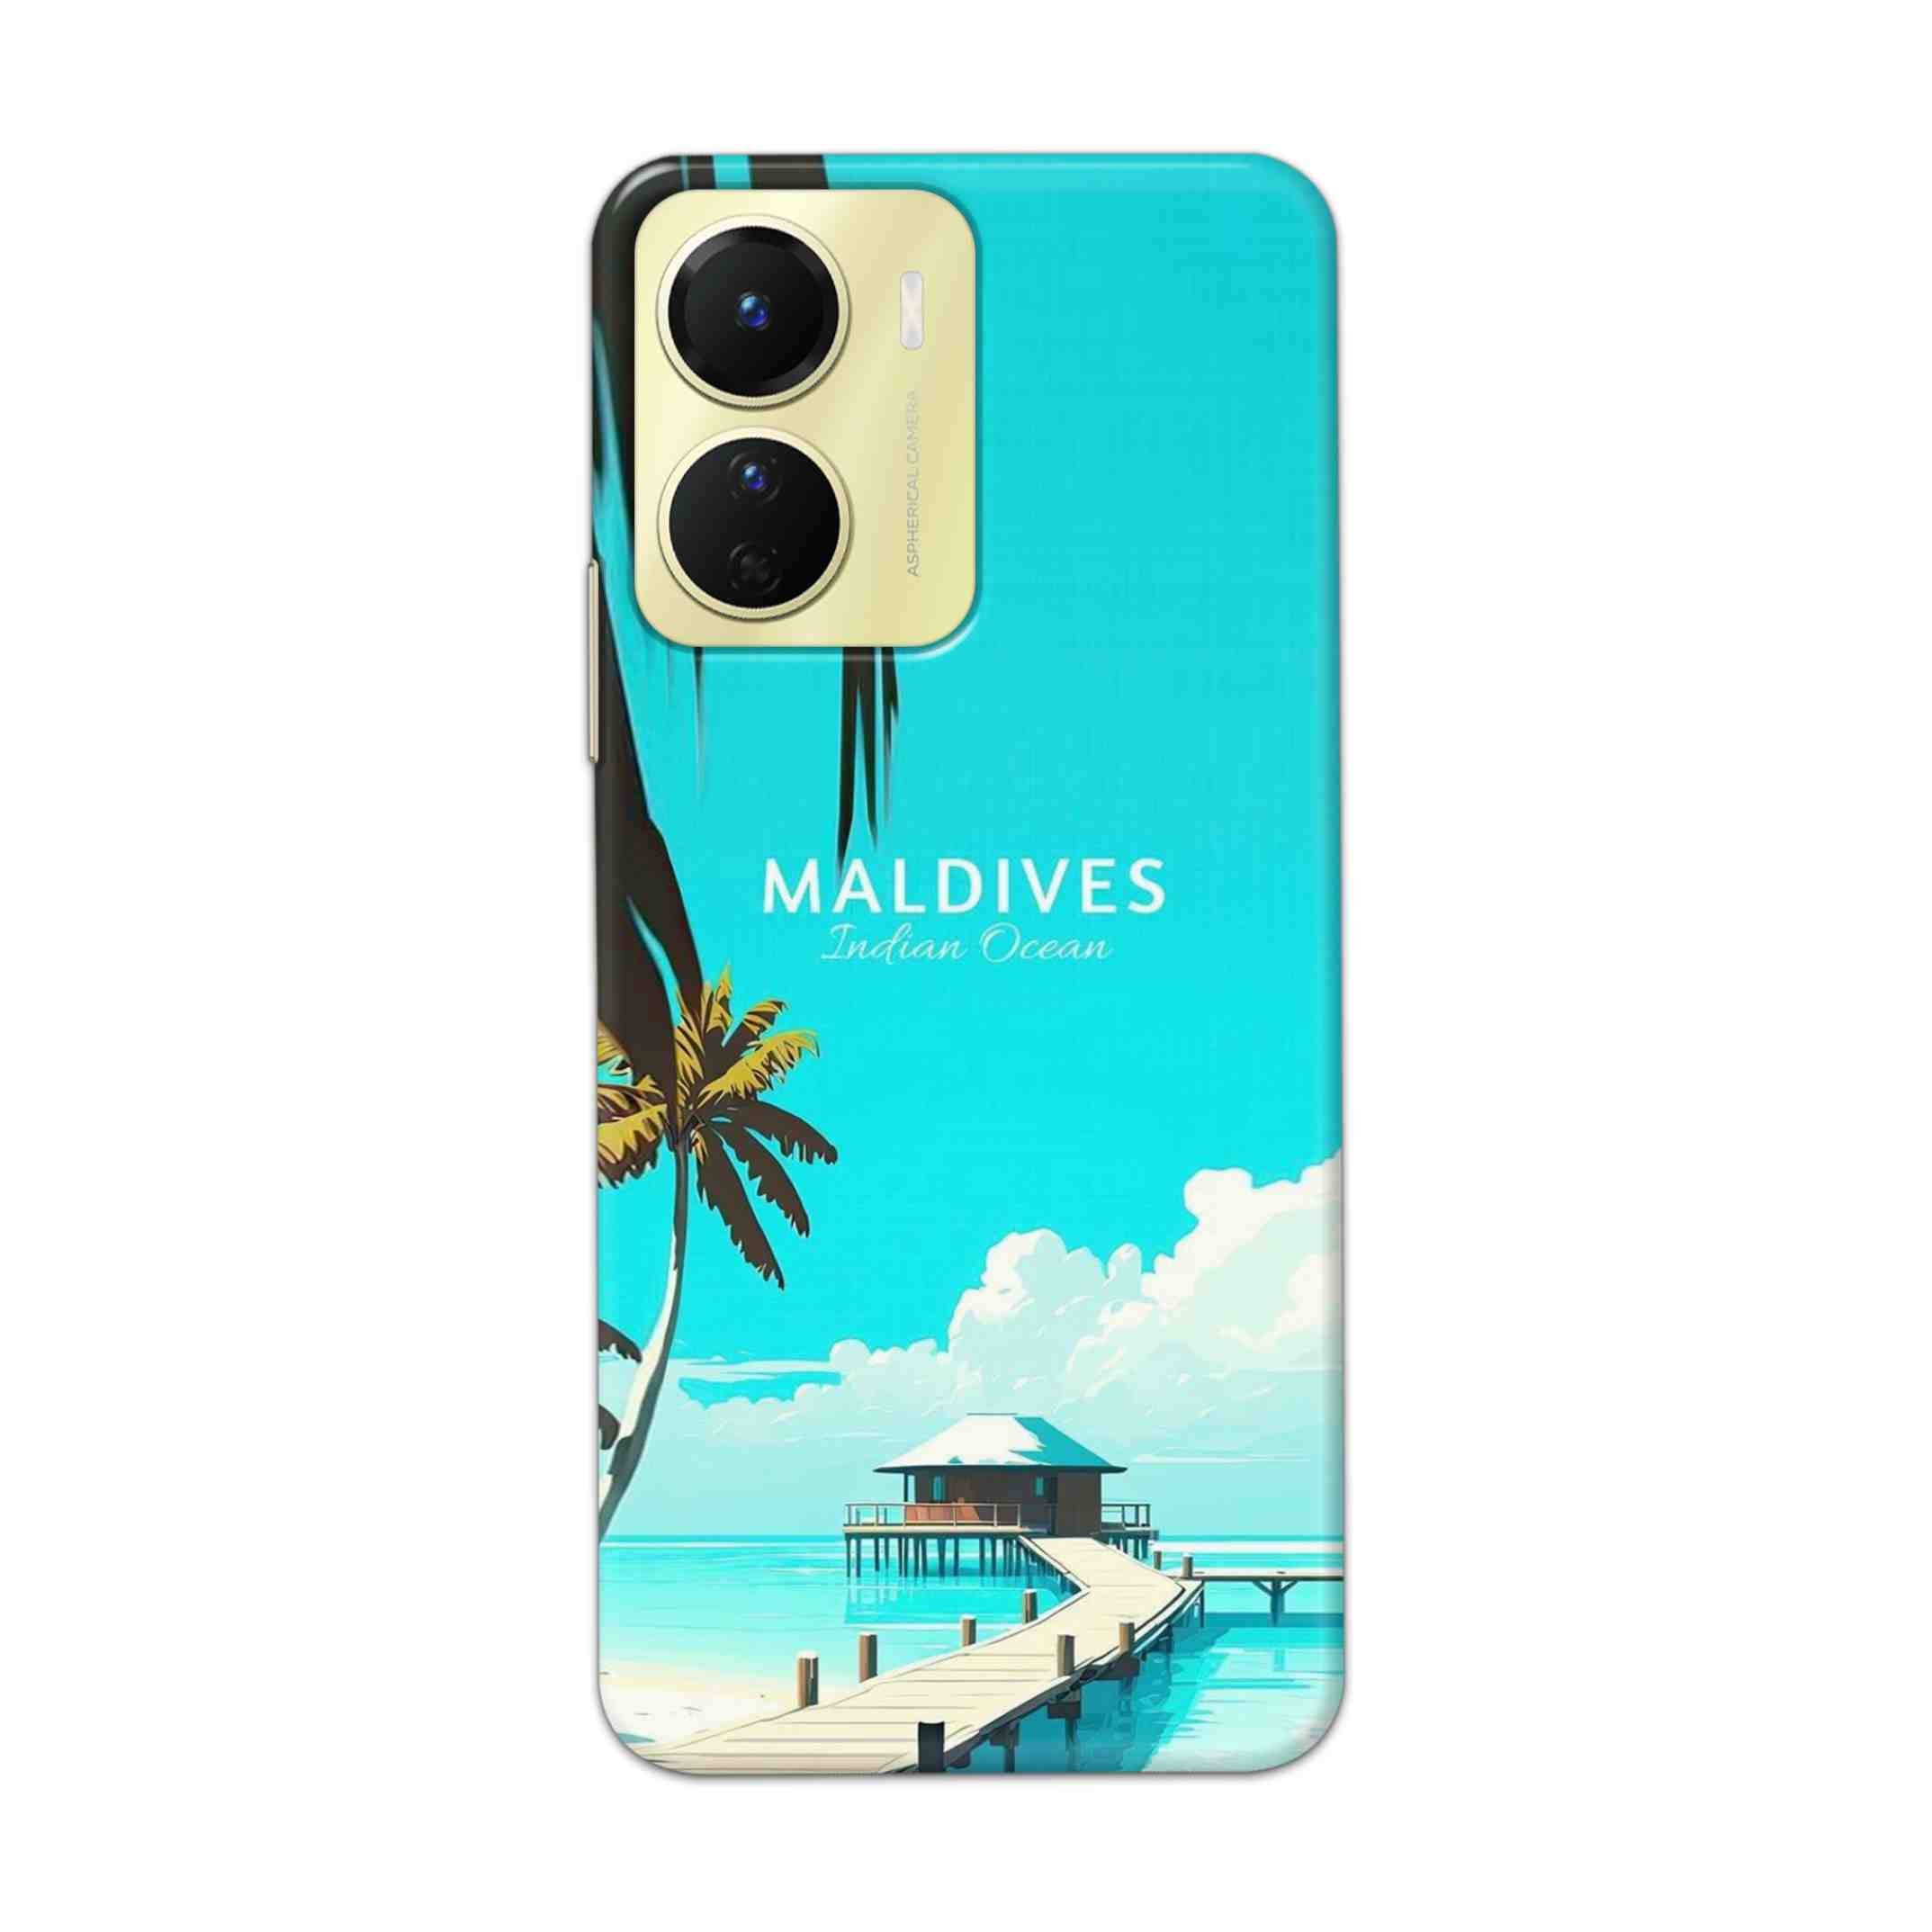 Buy Maldives Hard Back Mobile Phone Case Cover For Vivo Y16 Online